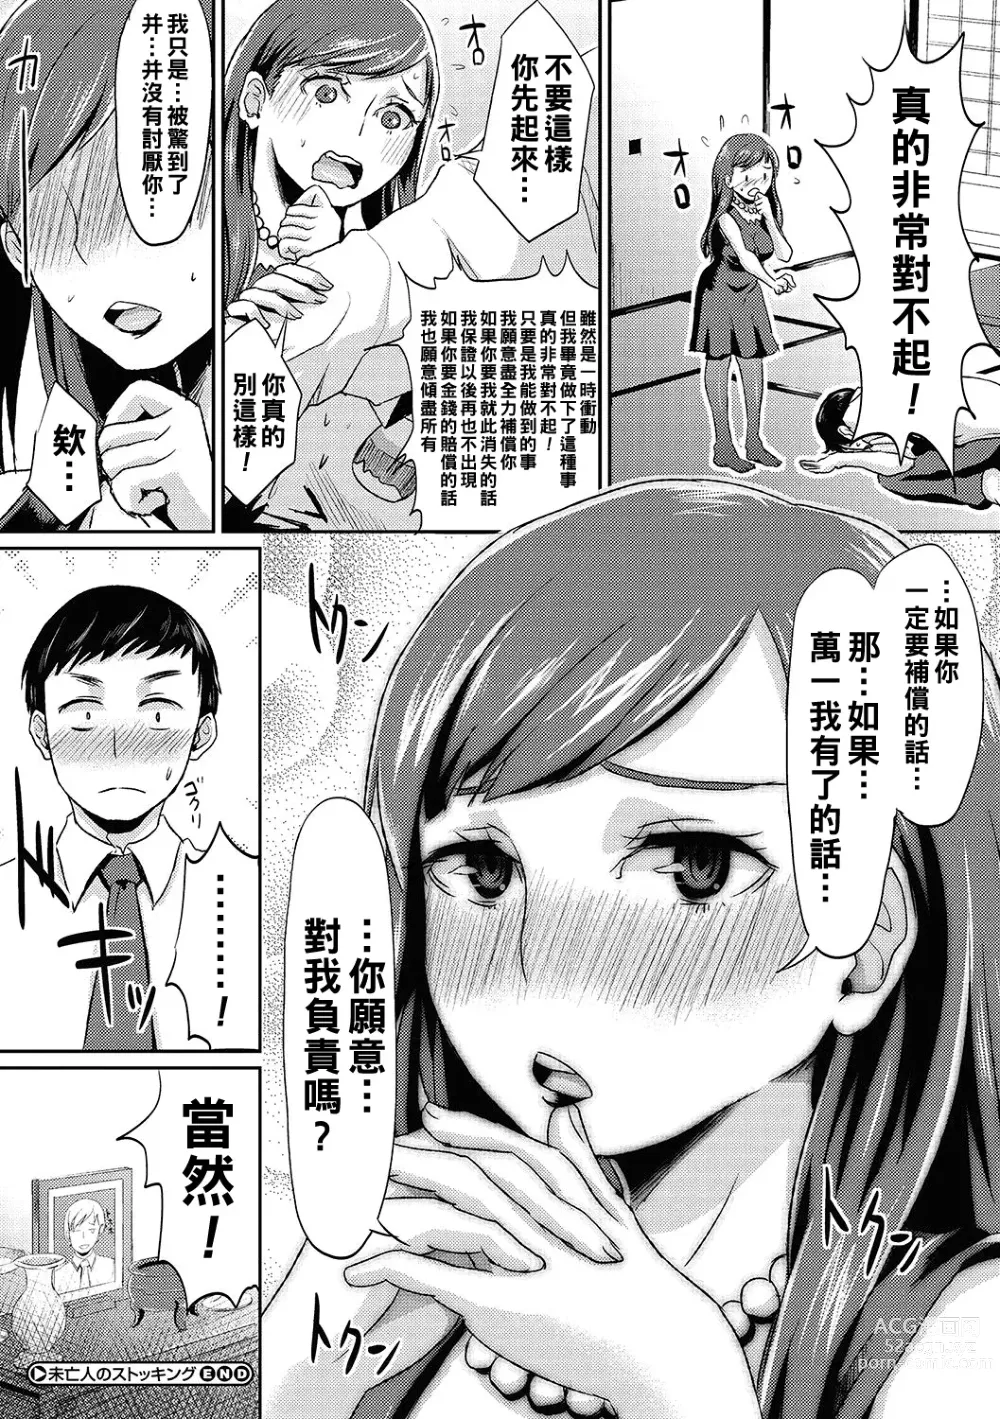 Page 20 of manga Miboujin no Stocking